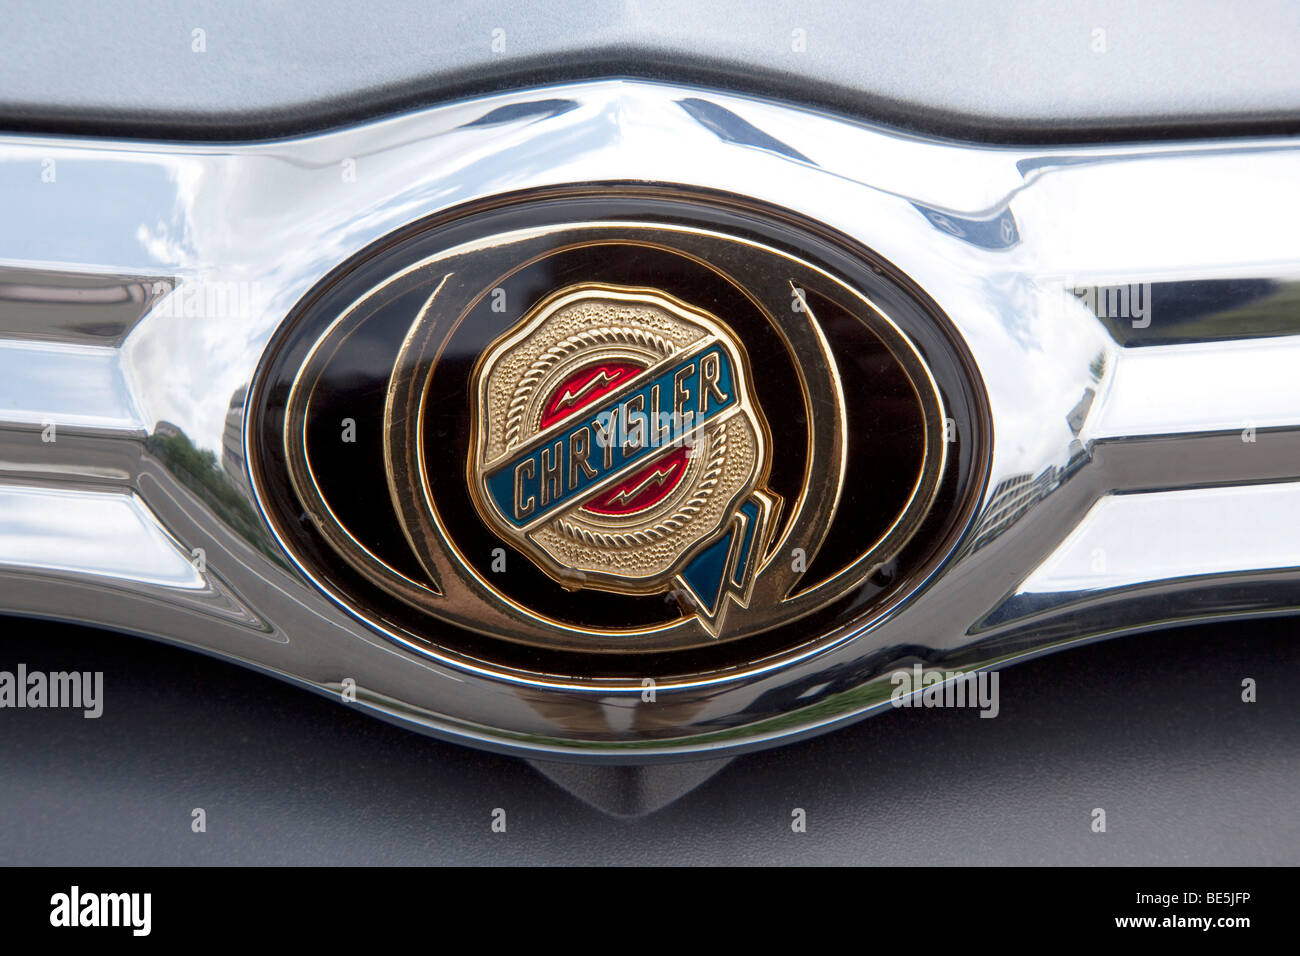 Logo of the Chrysler car brand Stock Photo